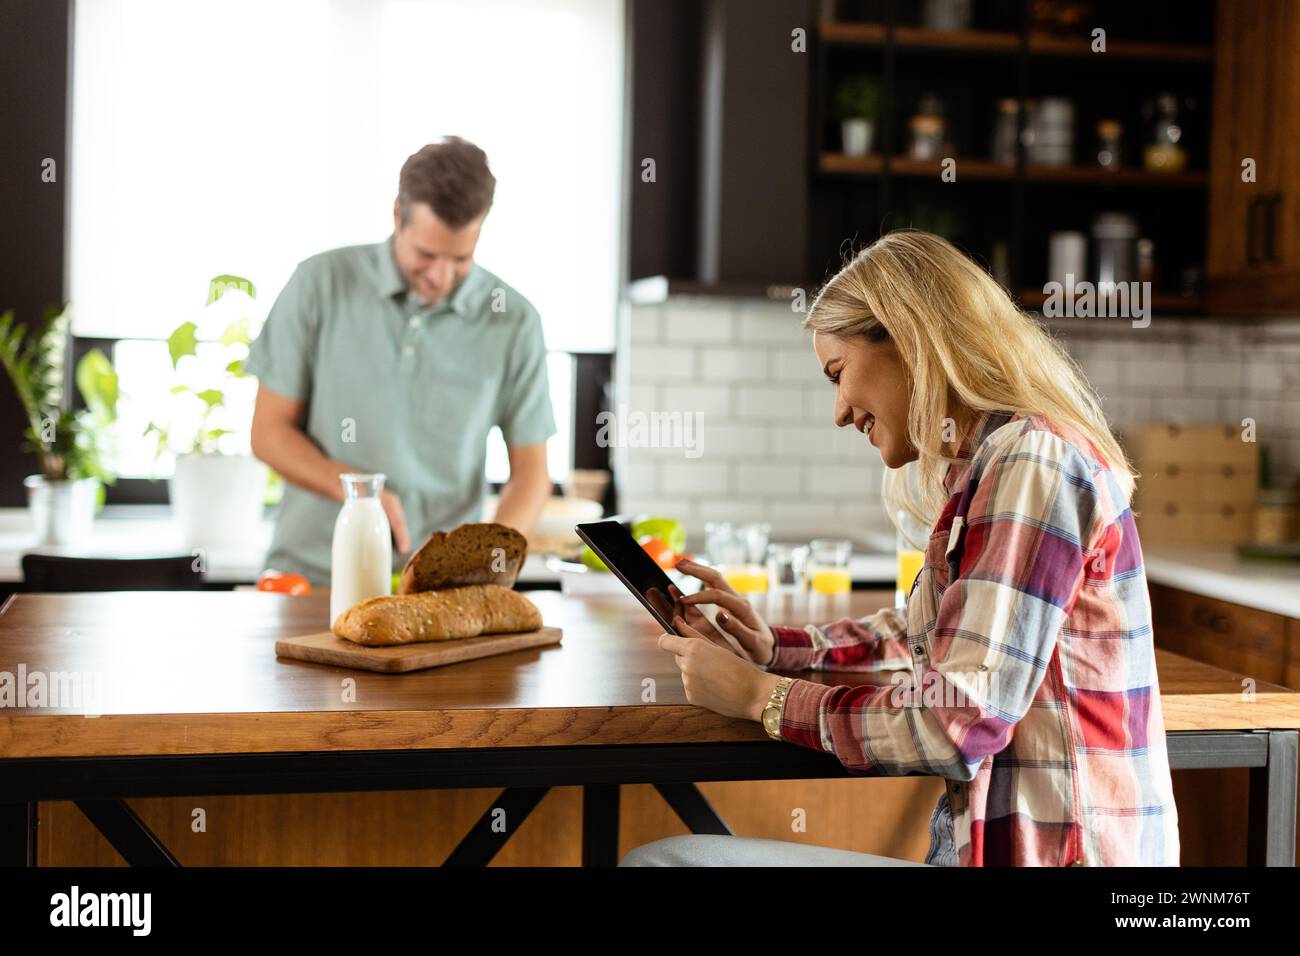 Une femme lit sur une tablette au comptoir de la cuisine tandis qu'un homme tenant une tomate lui sourit Banque D'Images